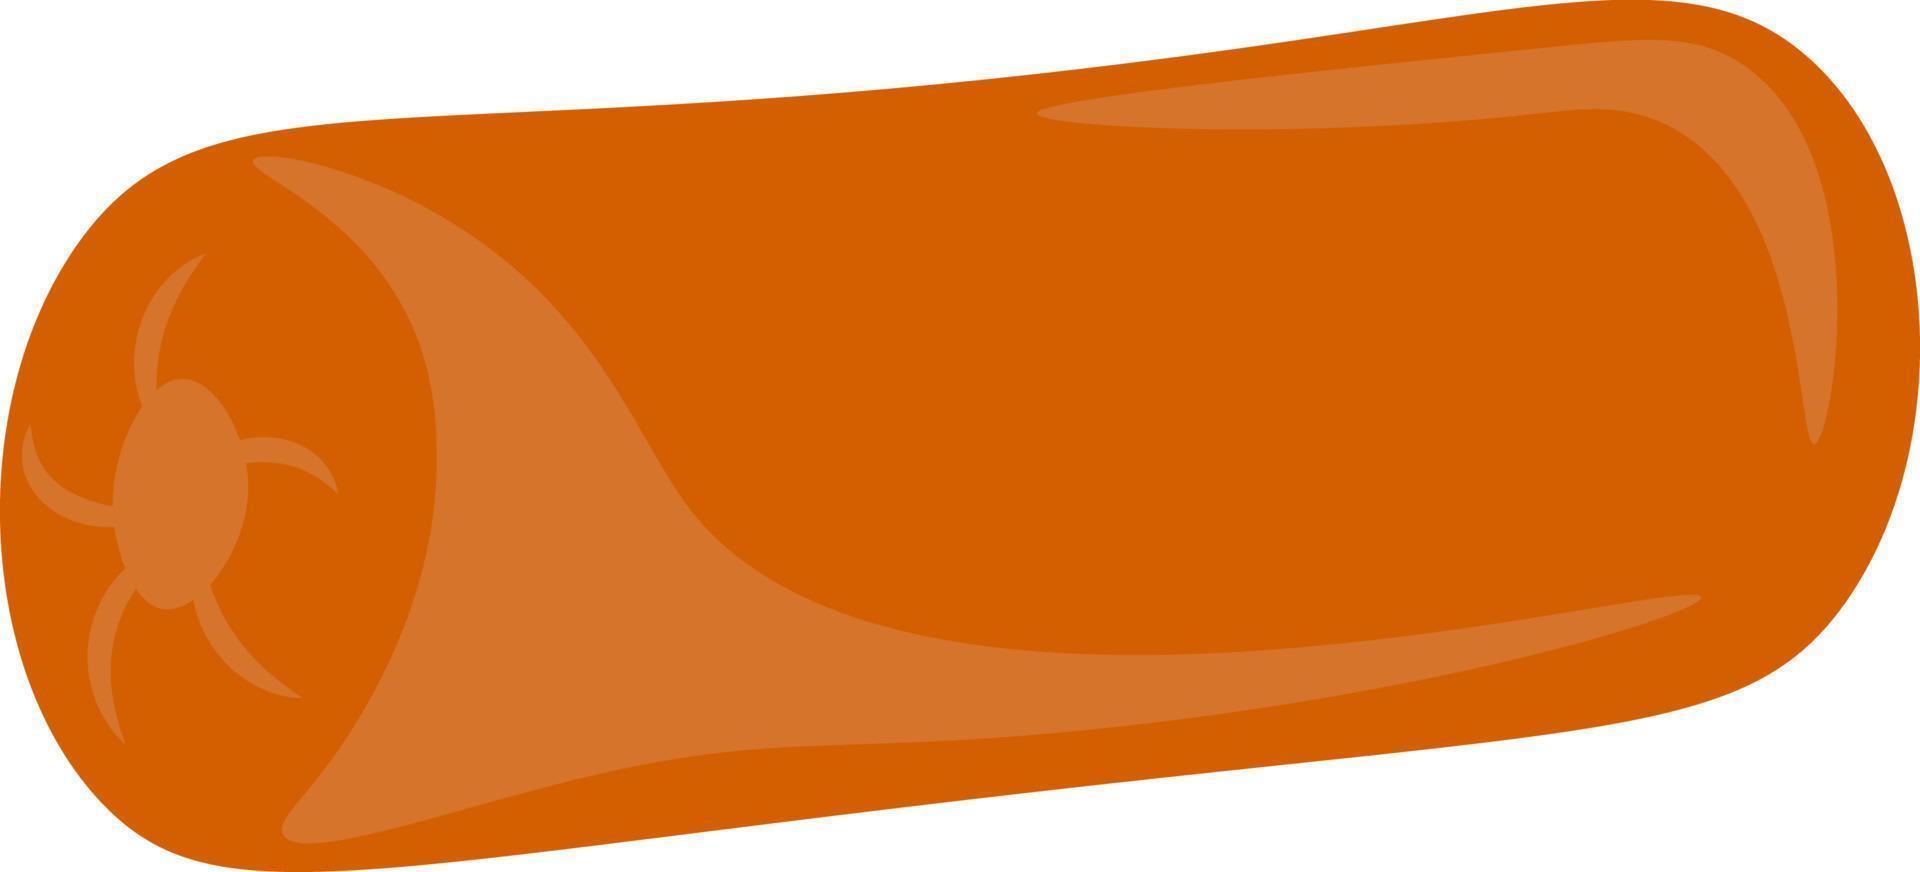 una cómoda almohada naranja, vector o ilustración en color.